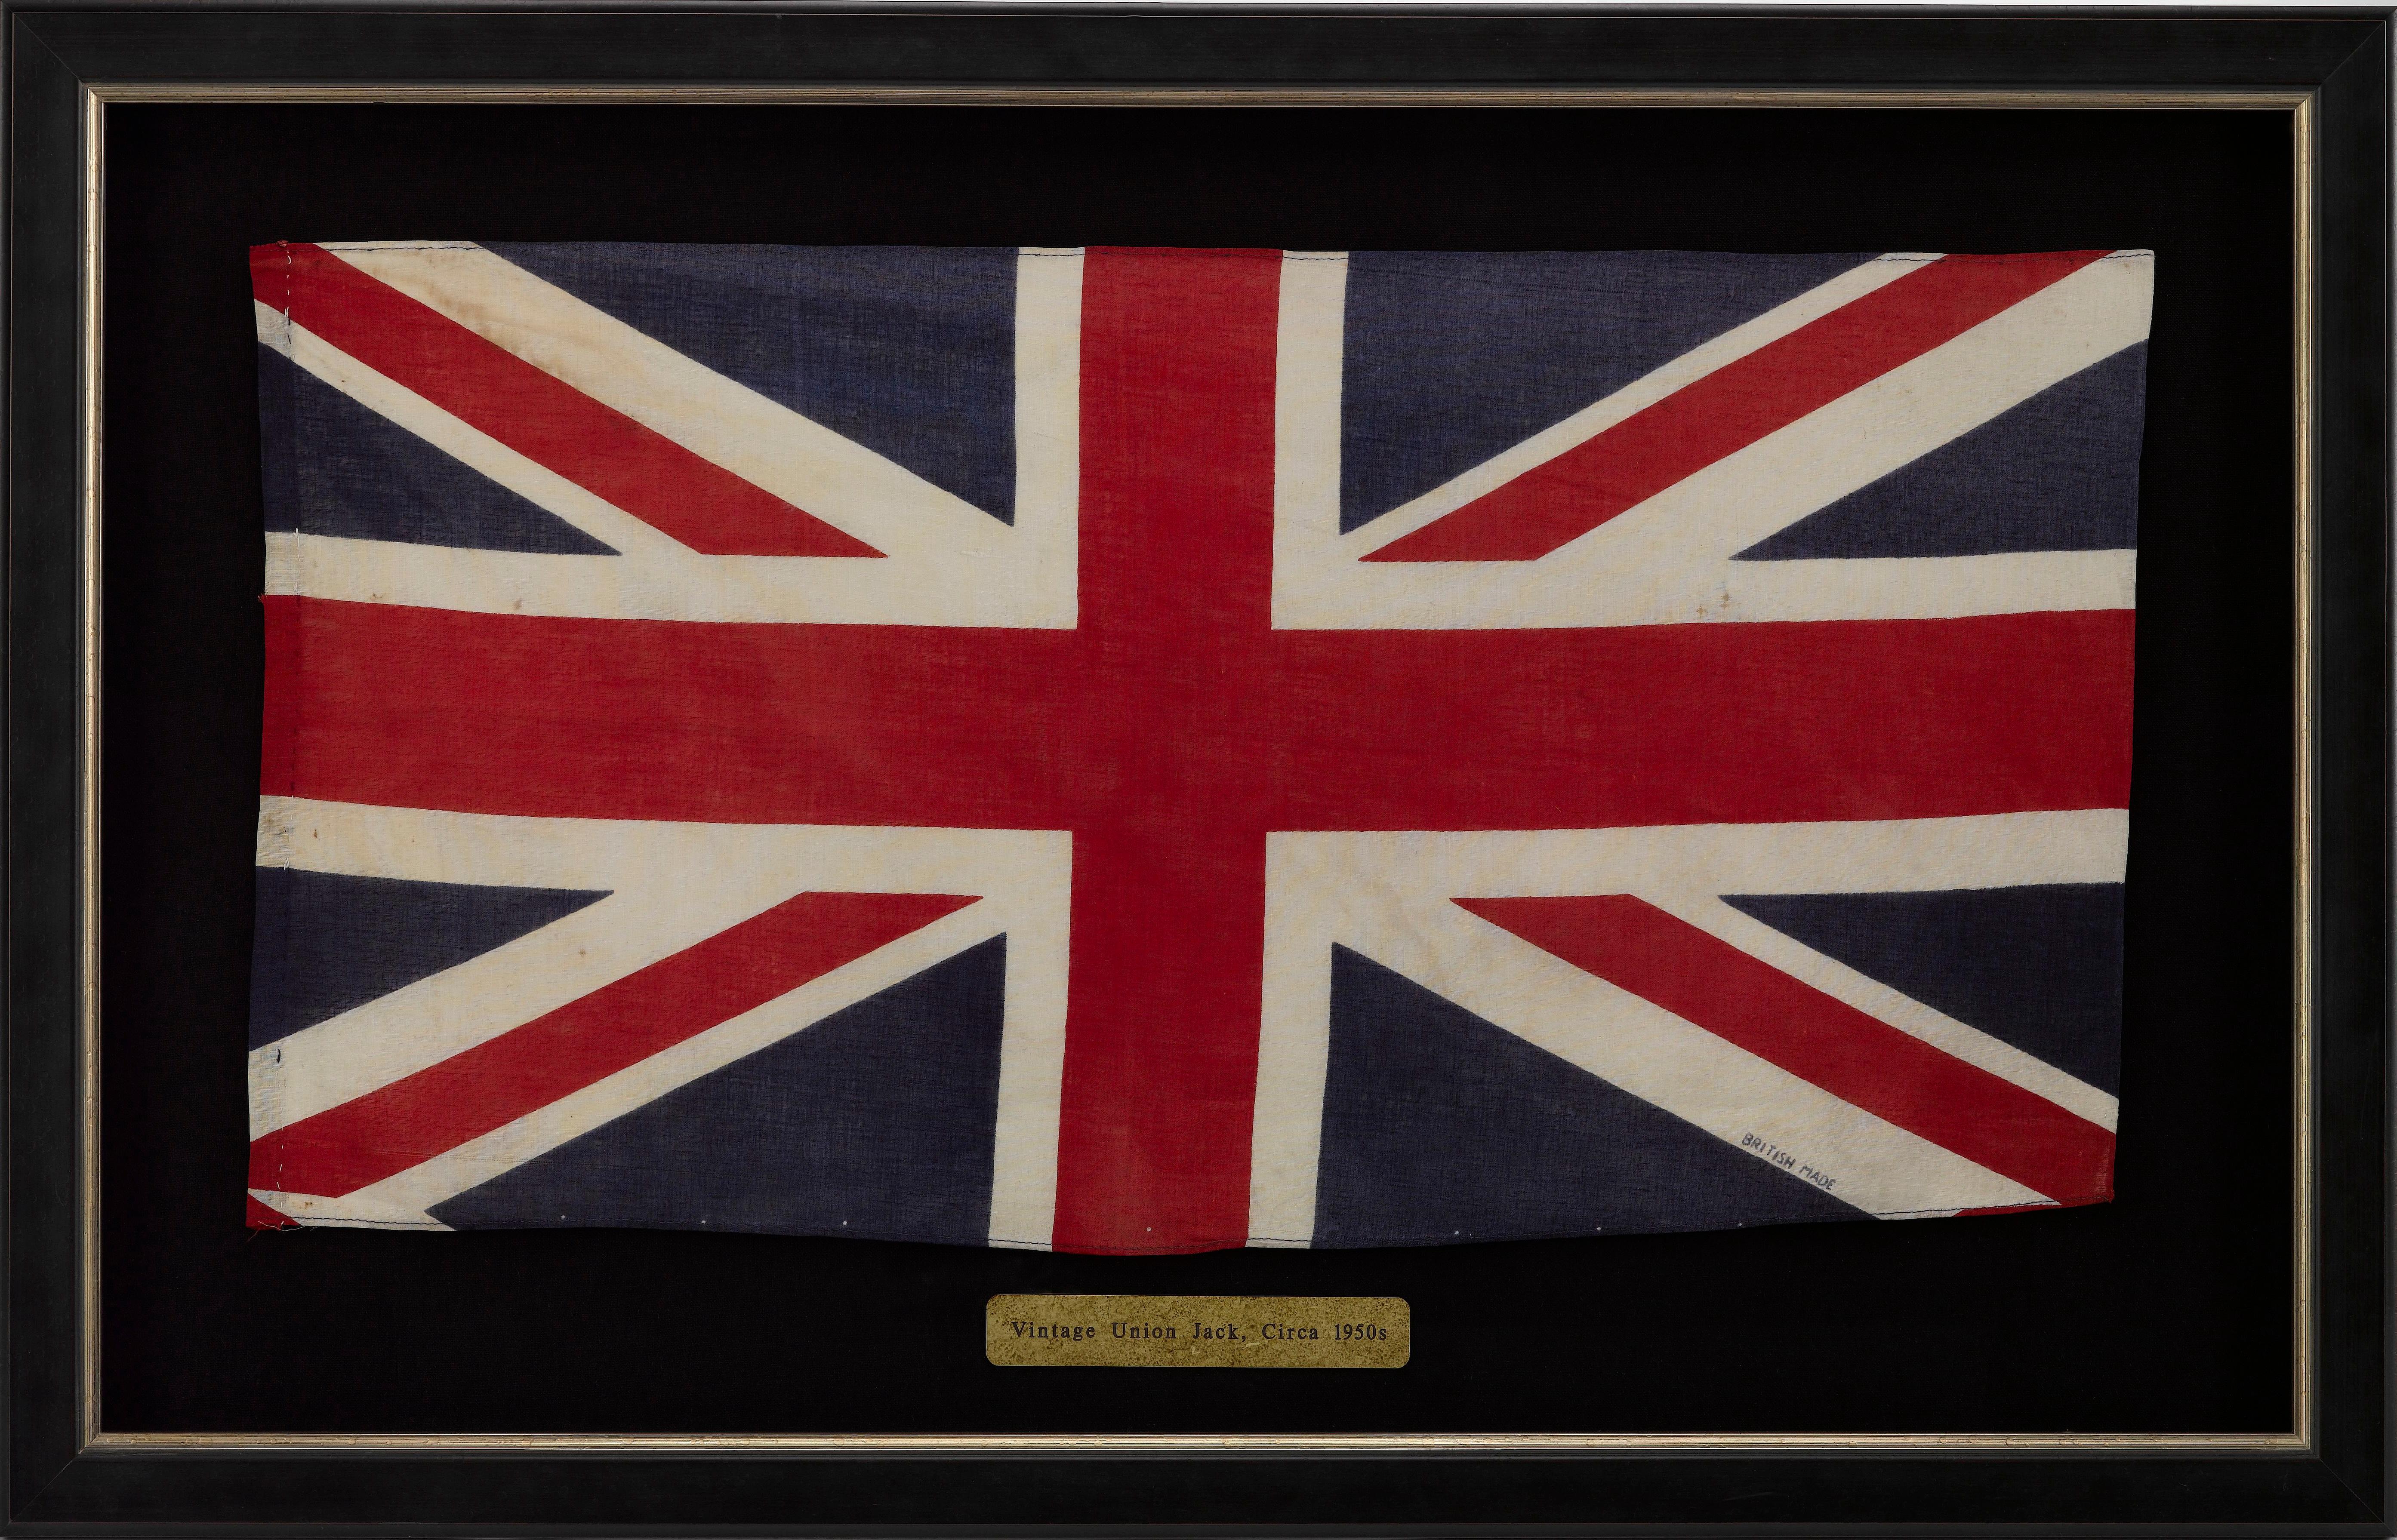 Dies ist eine wunderschöne Paradeflagge im Union Jack, die aus den frühen 1950er Jahren stammt, also aus den ersten Jahren der Regentschaft von Königin Elisabeth II. Die Fahne ist auf Baumwolle gedruckt und oben und unten maschinengenäht. Die Flagge